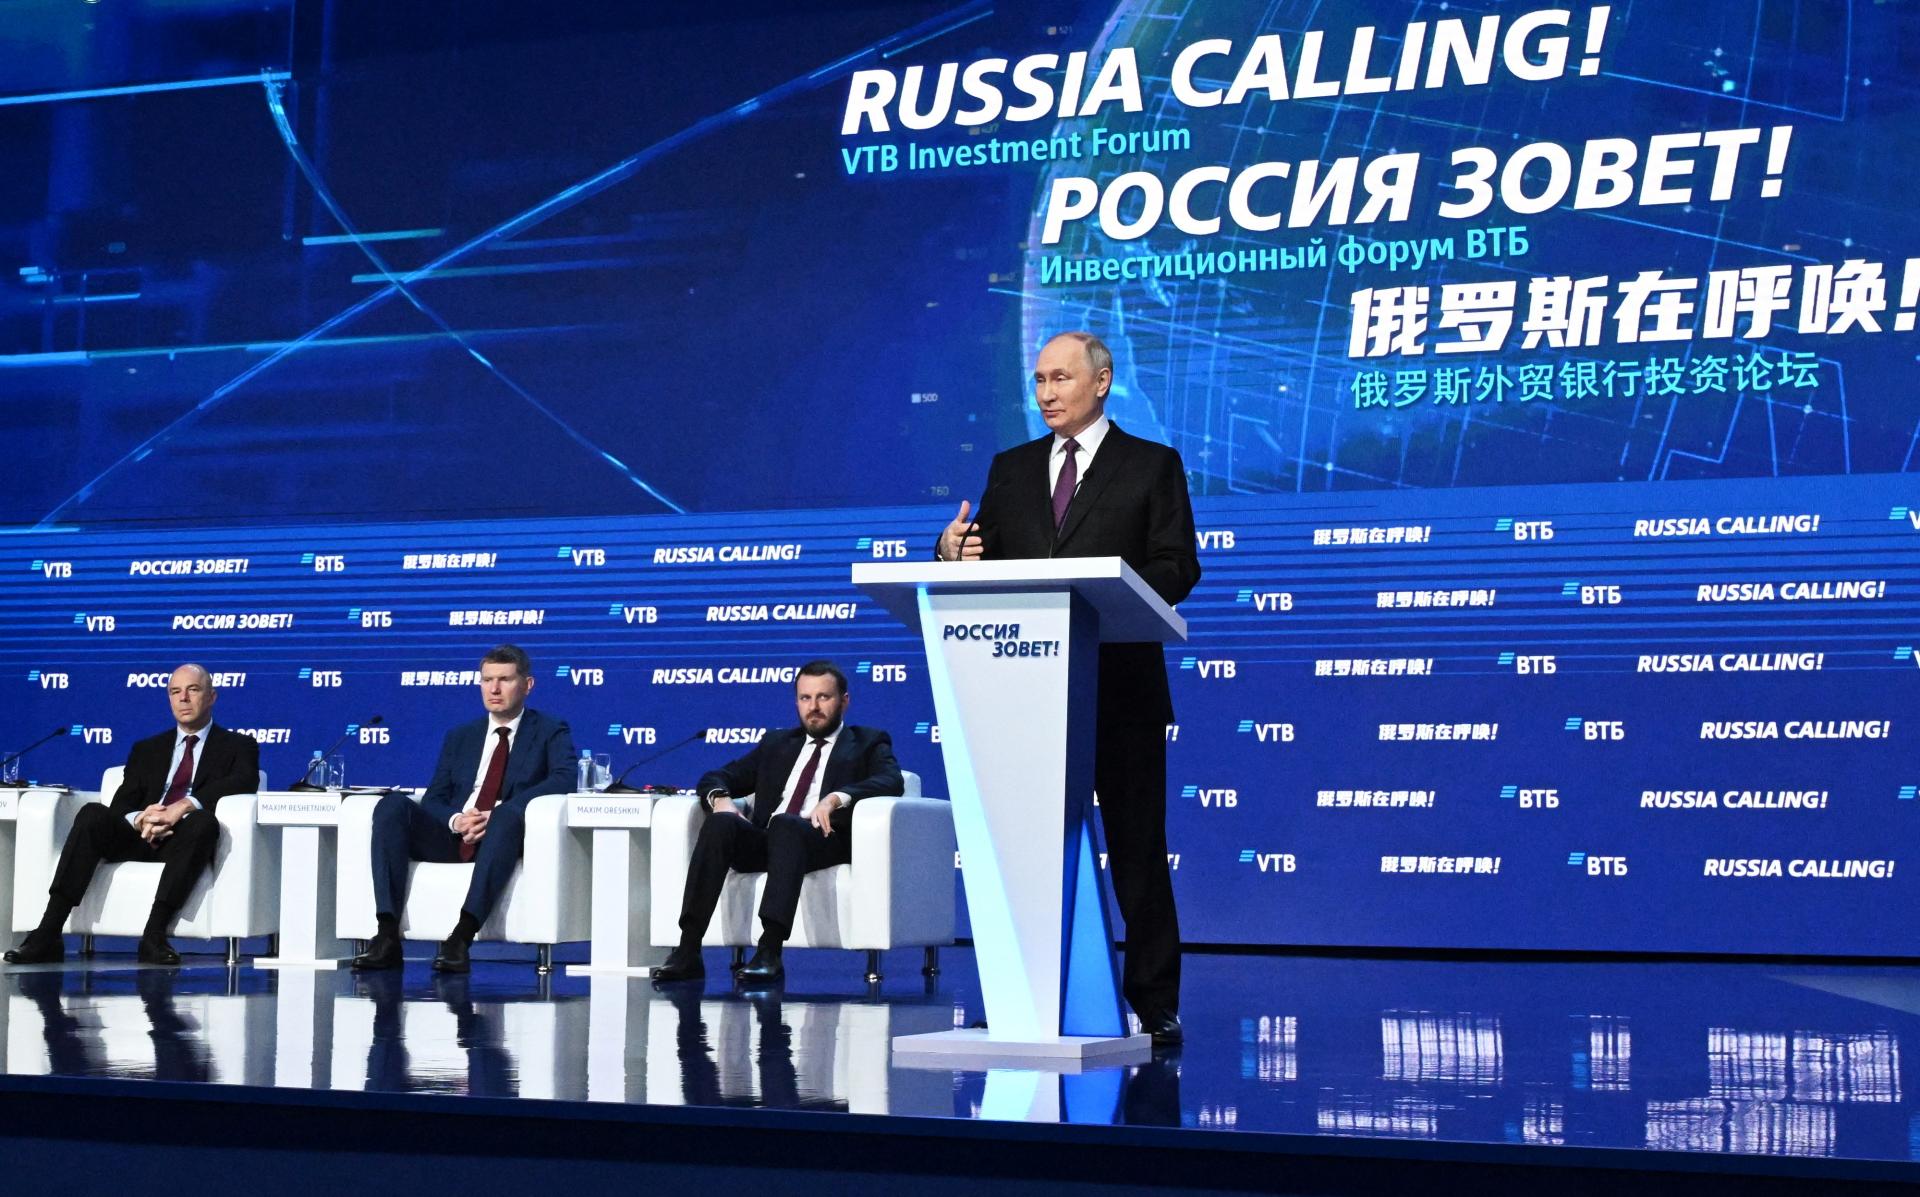 Putin velebil ruskú ekonomiku. Západ zaspal na vavrínoch a technologicky zaostáva, tvrdí